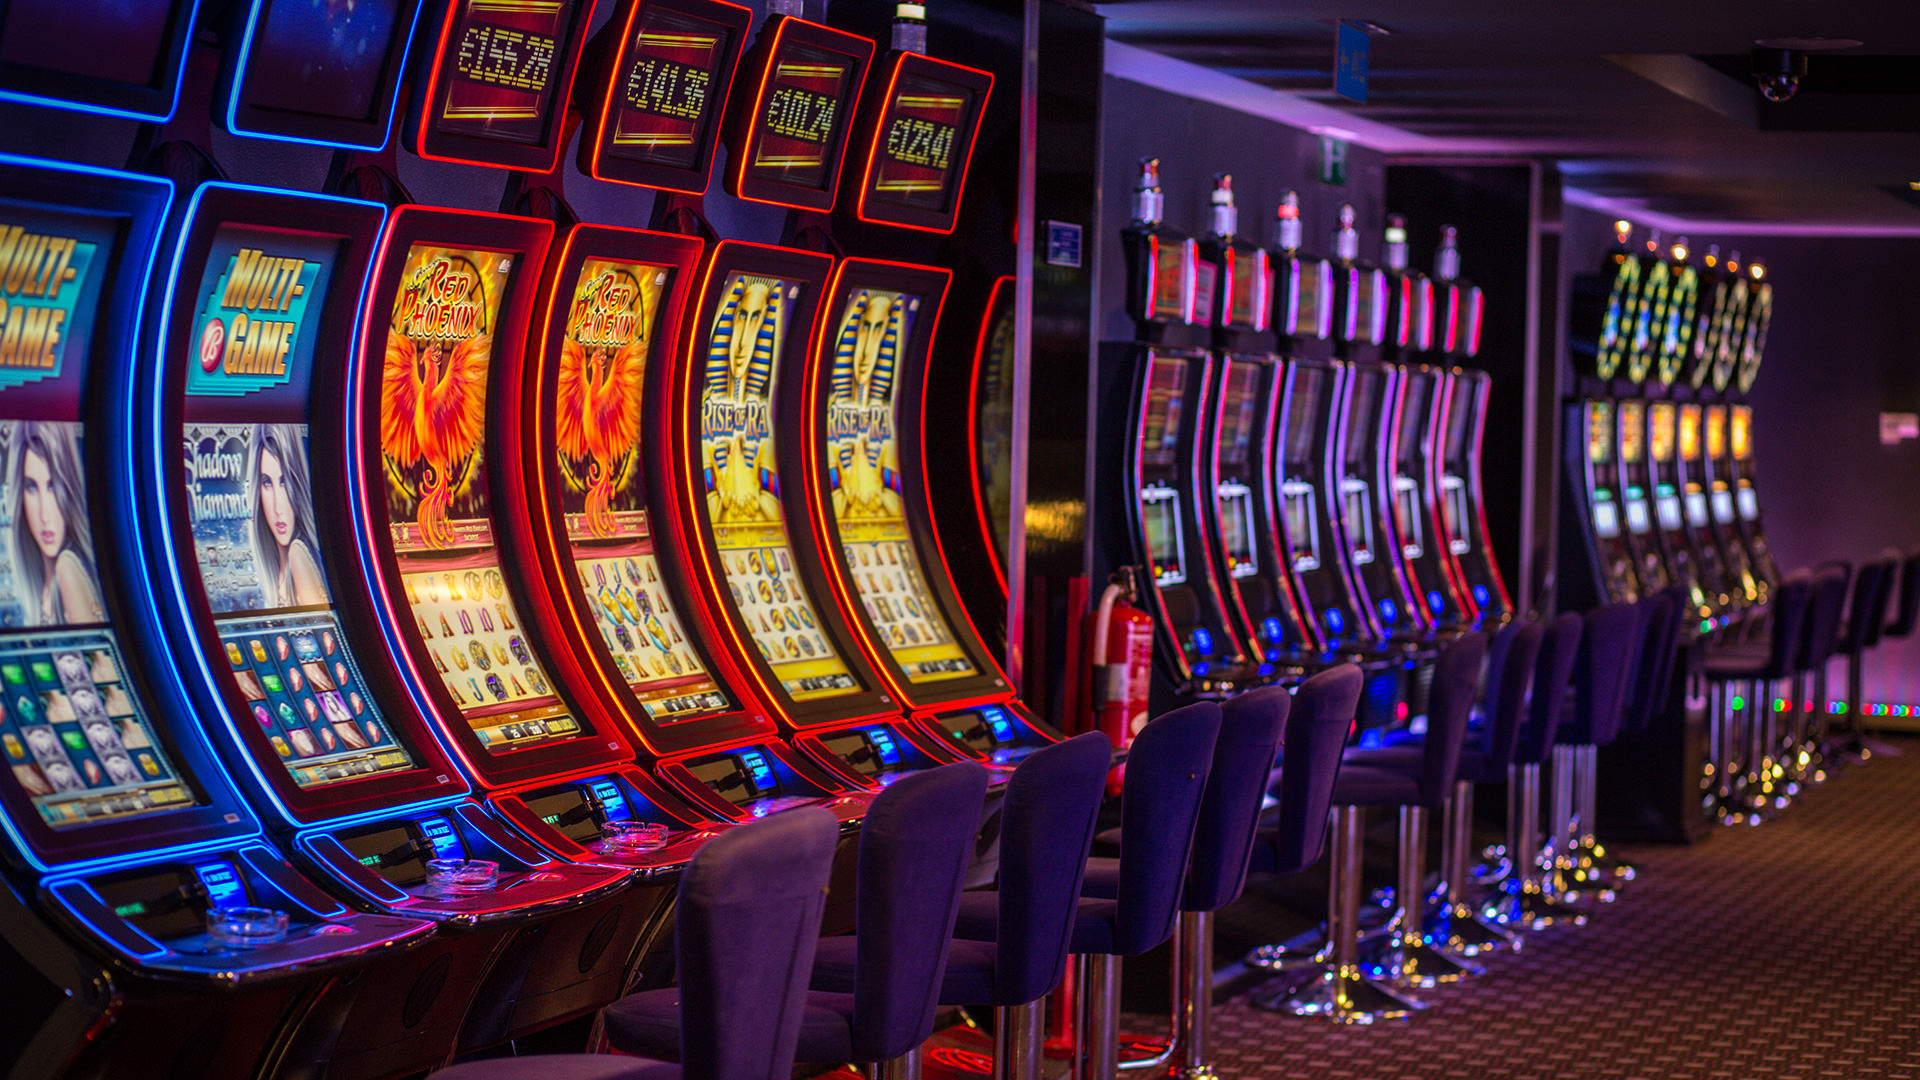 25 Ecu Prämie Ohne Einzahlung casino online seriös Inoffizieller mitarbeiter Ggbet Kasino + 200!